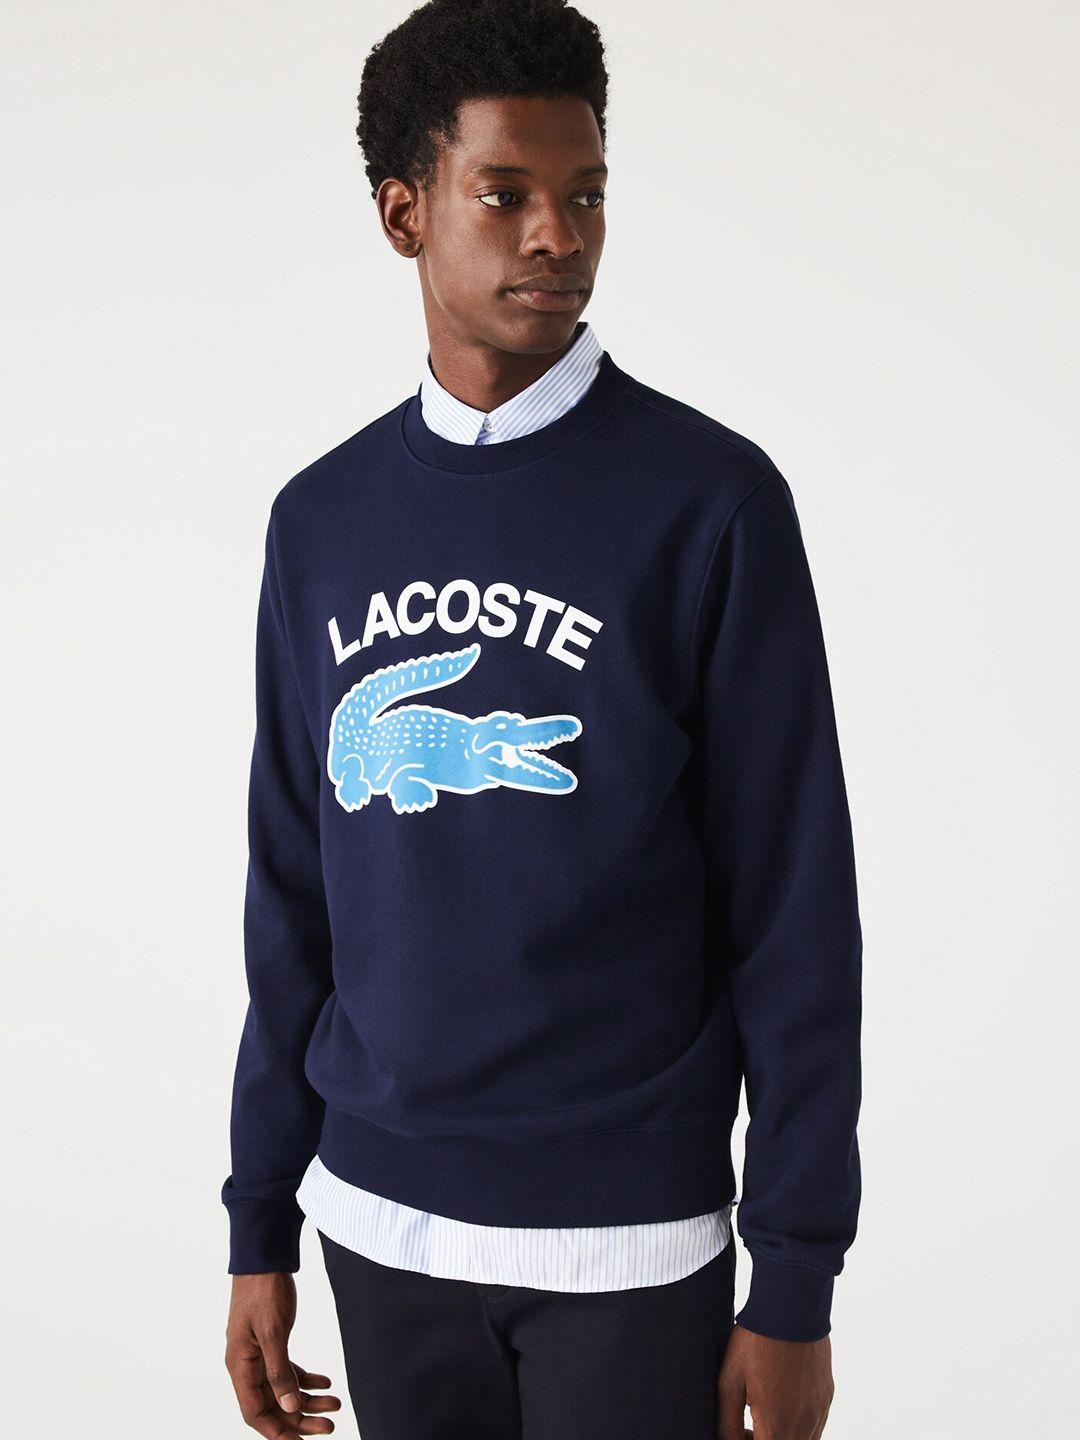 lacoste-men-printed-cotton-round-neck-sweatshirt